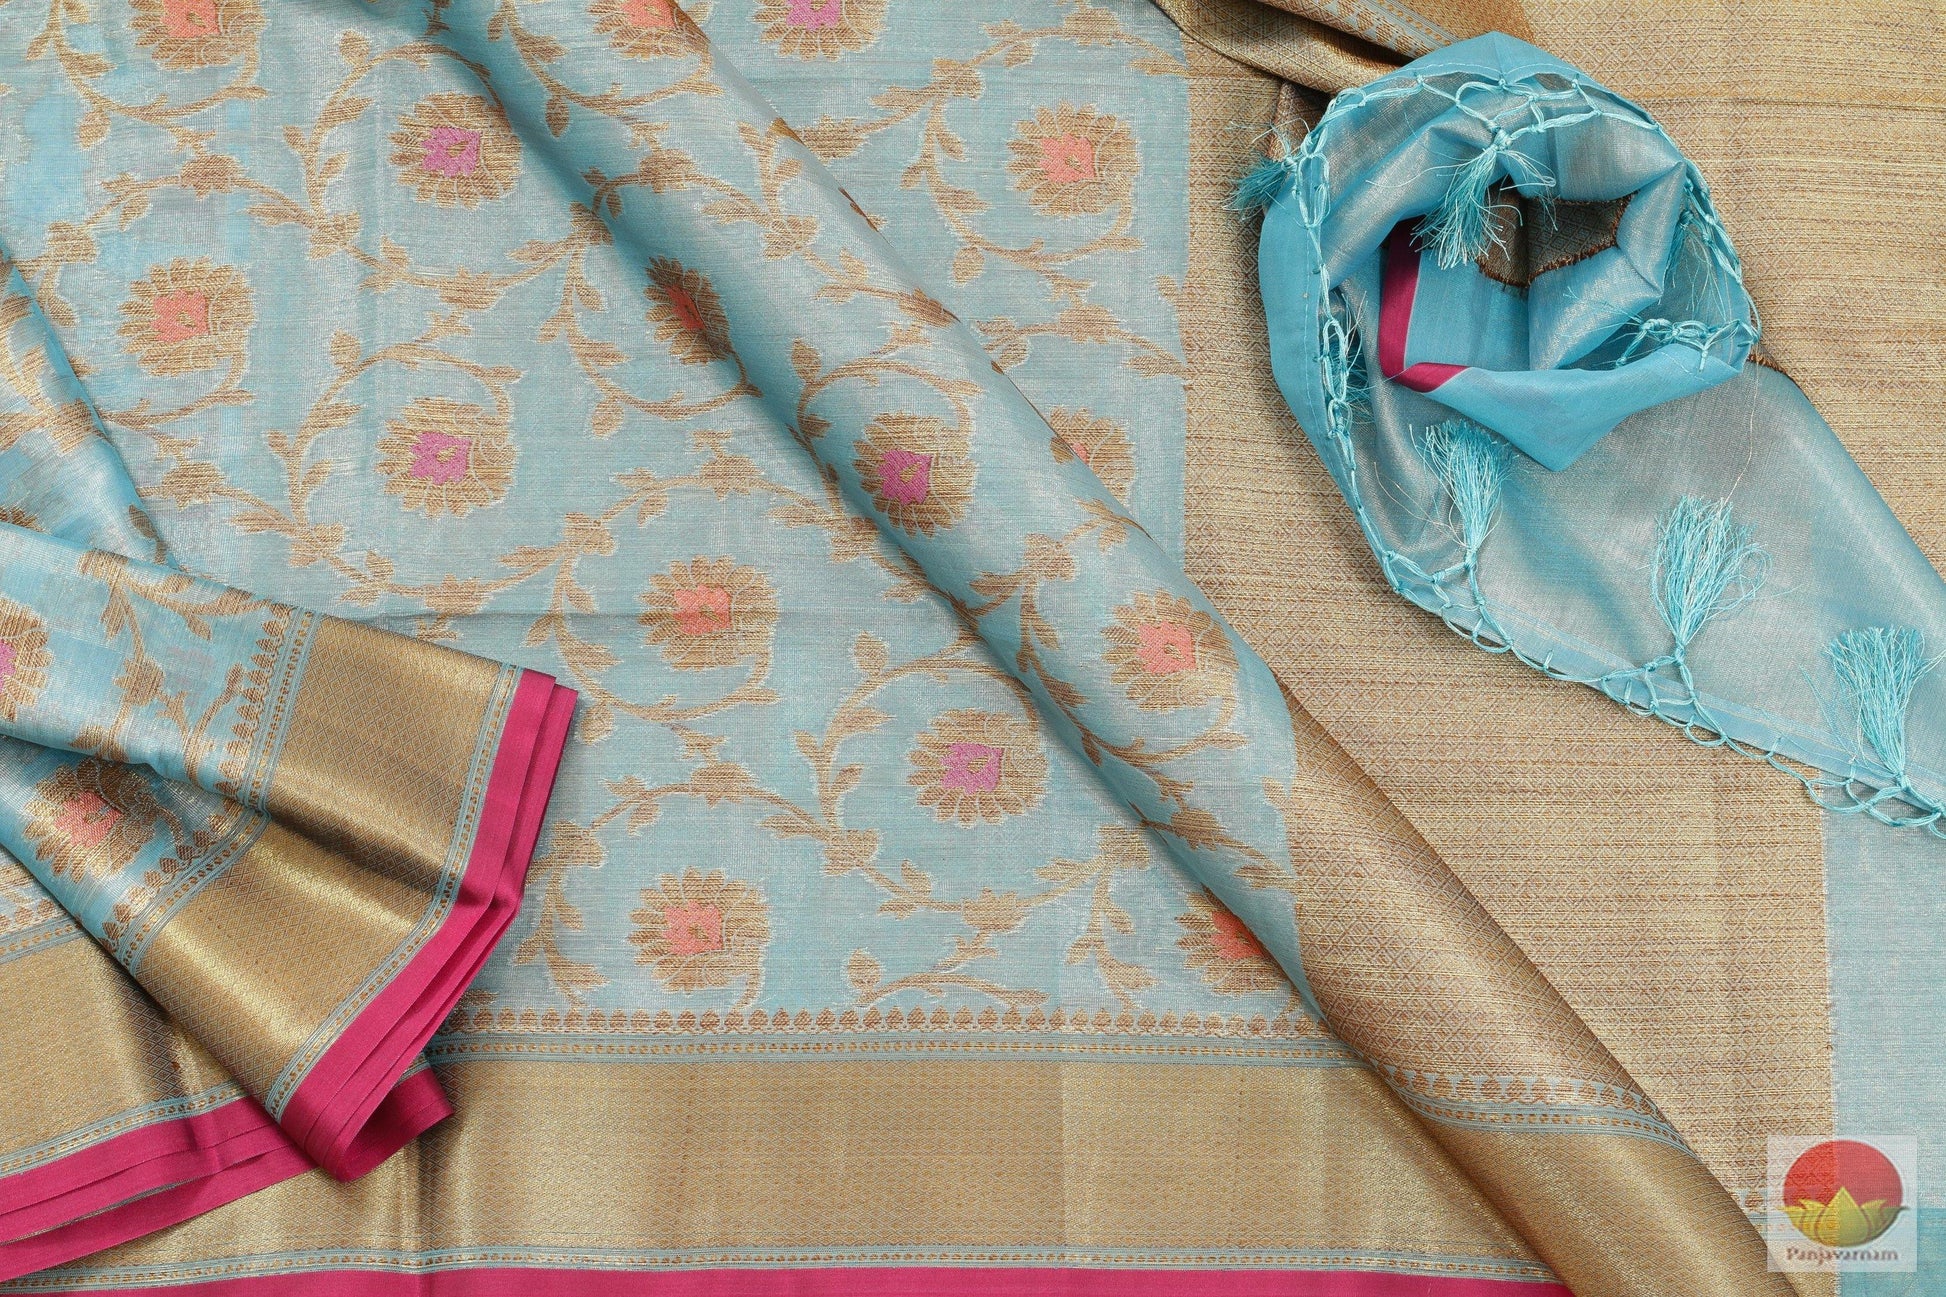 Handwoven Banarasi Silk Cotton Saree - PSC 504 Archives - Silk Cotton - Panjavarnam